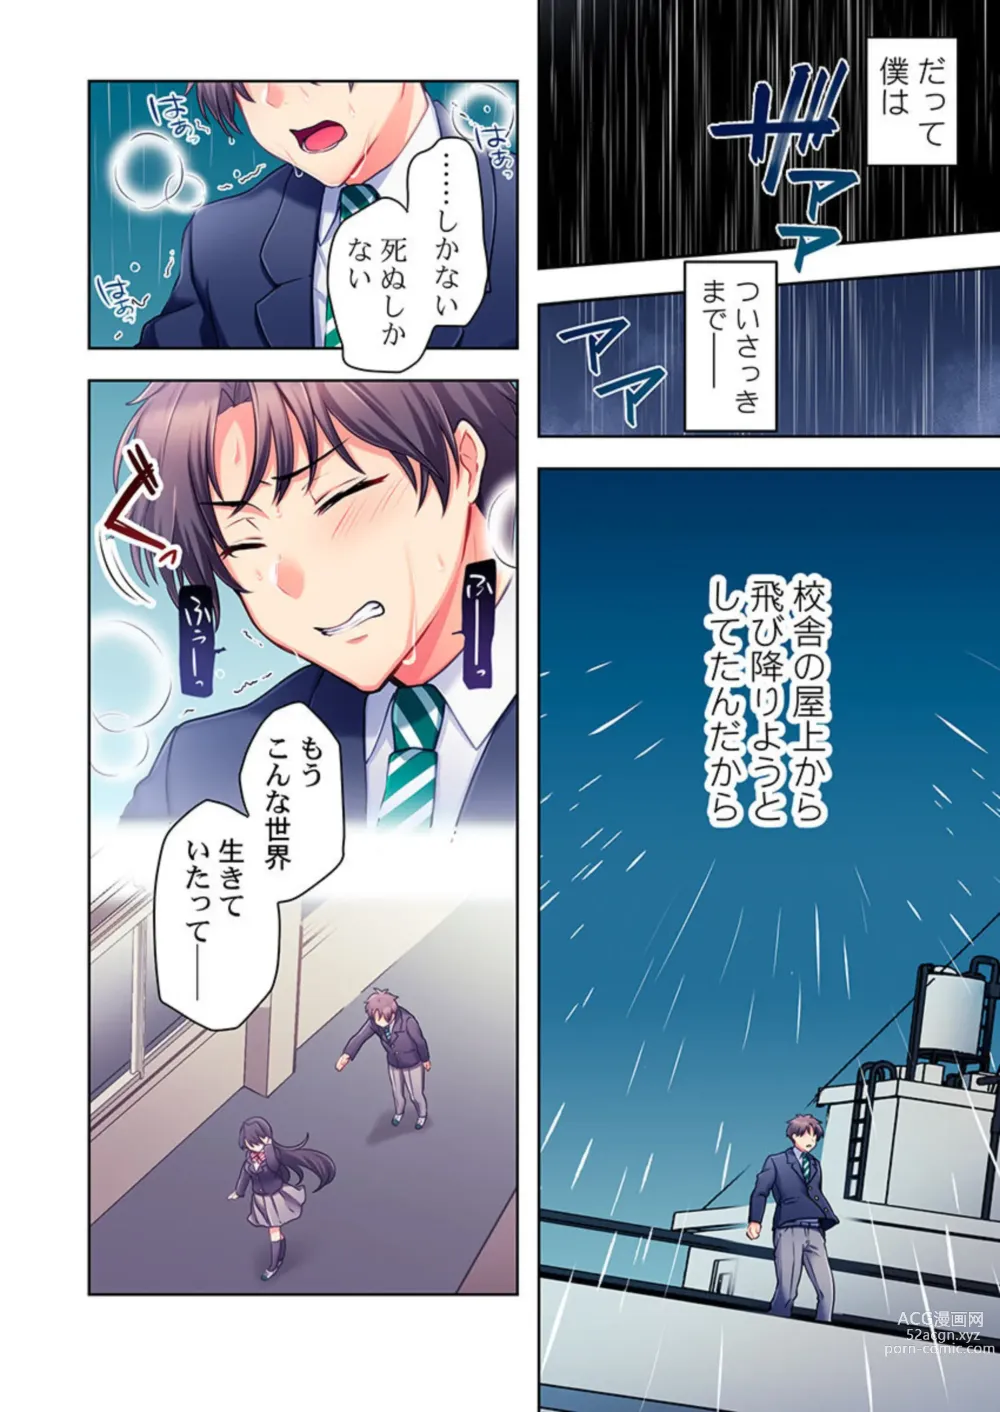 Page 4 of manga Yarebatobu 1